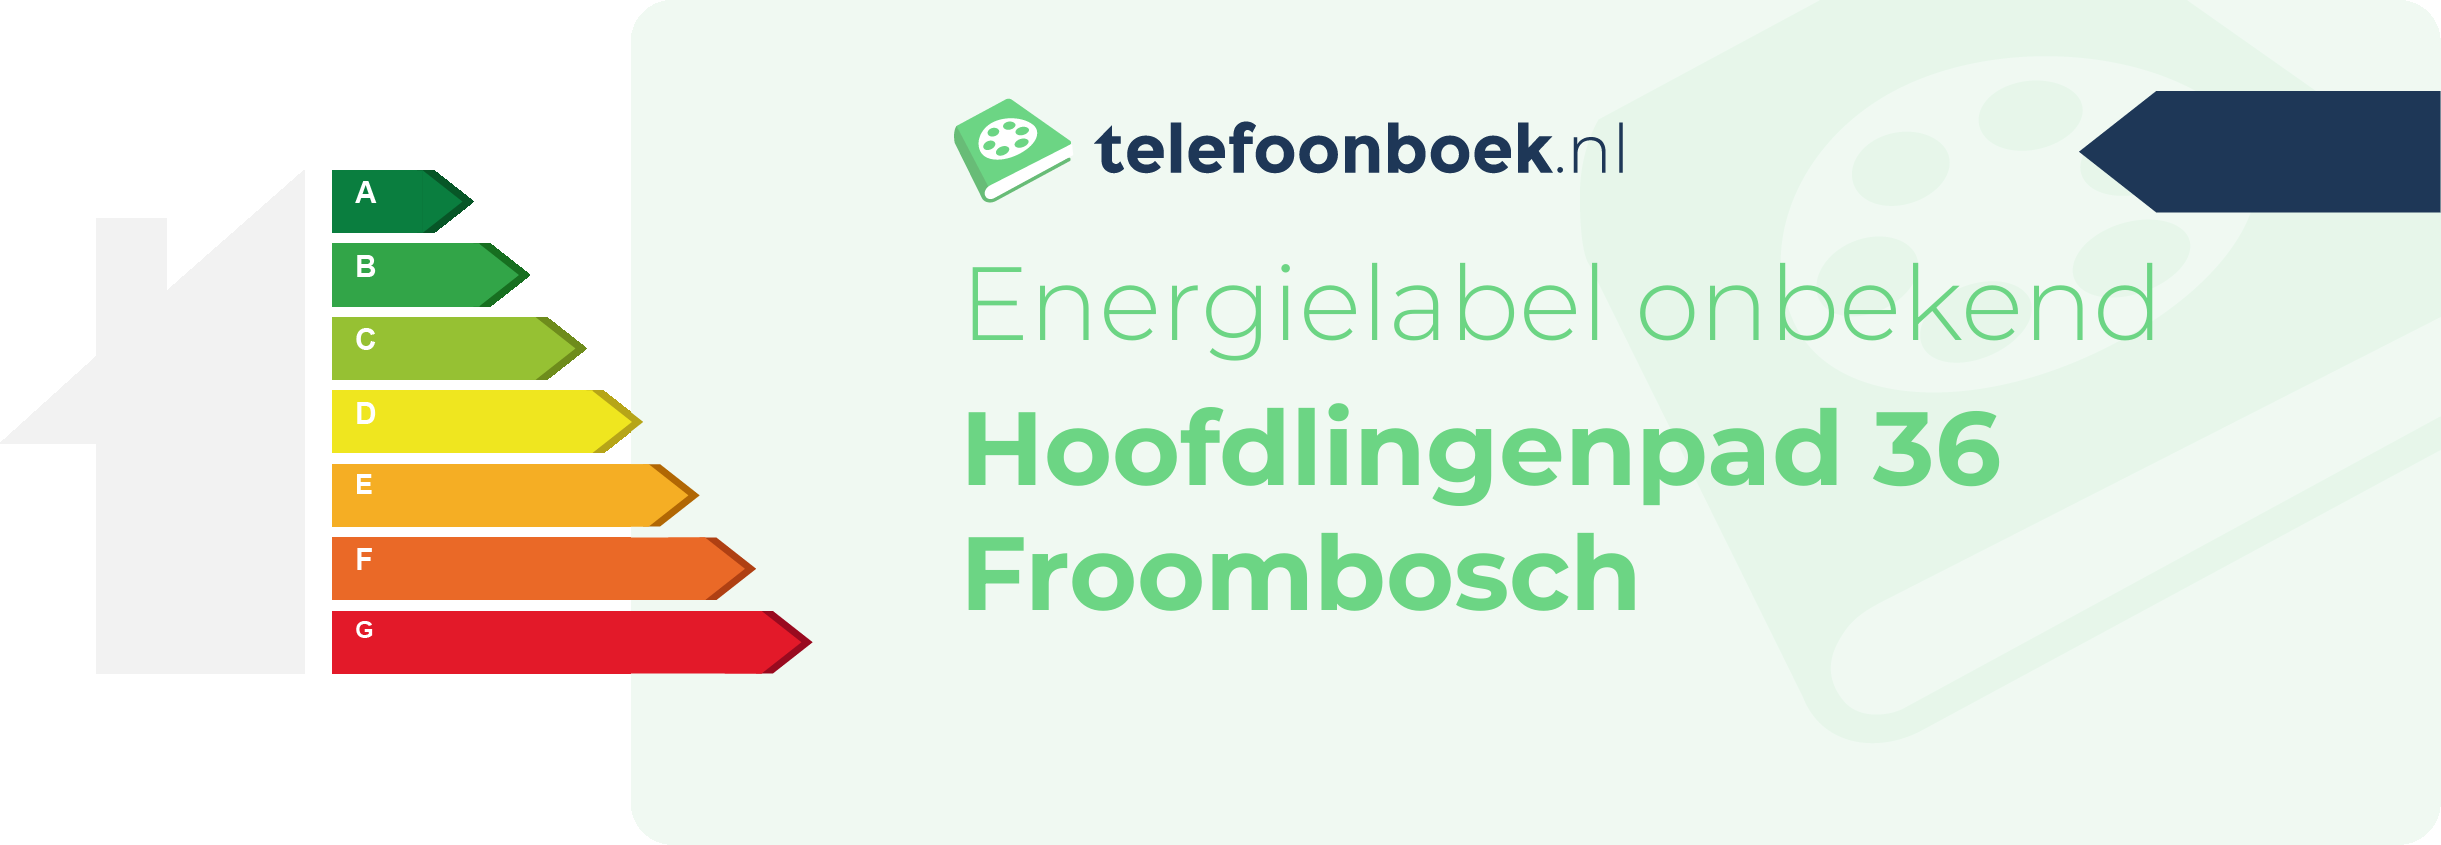 Energielabel Hoofdlingenpad 36 Froombosch